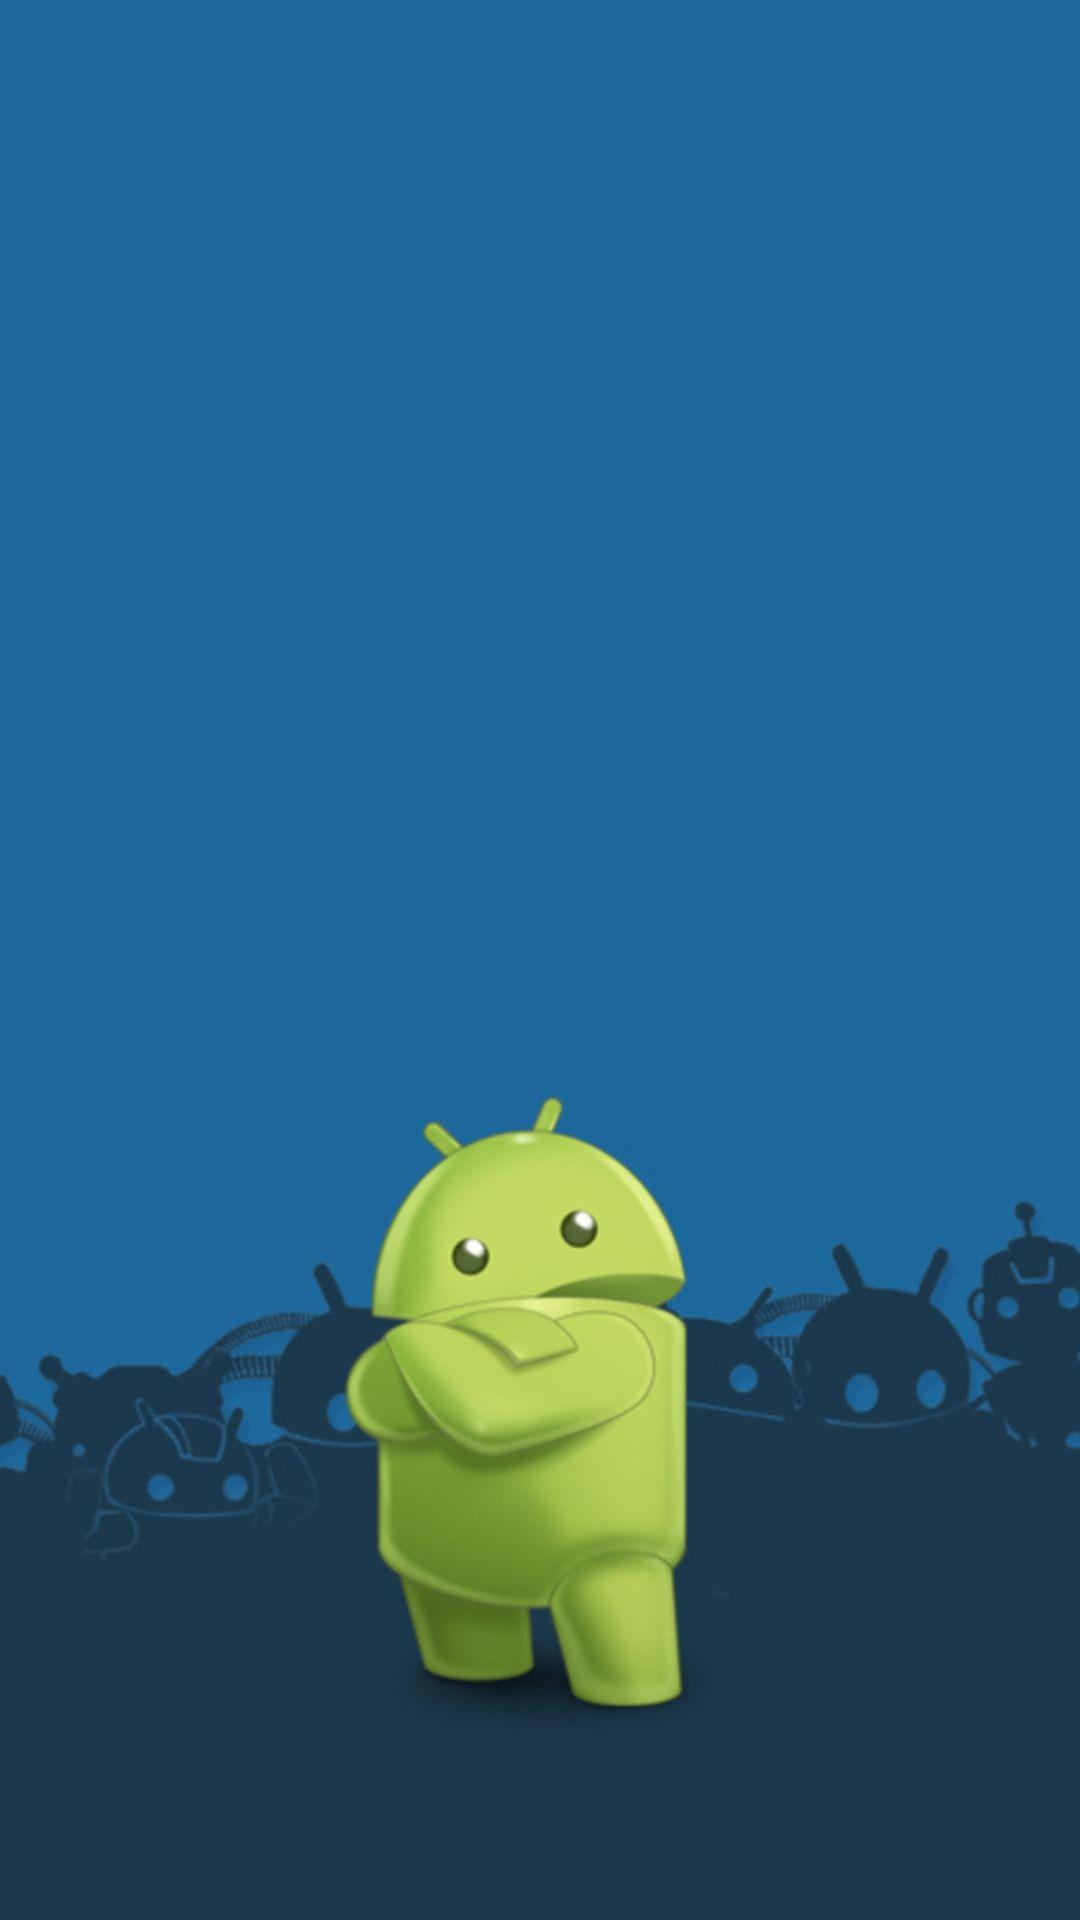 1080x1920 Logo Android tuyệt vời Hình nền điện thoại thông minh Android ⋆ GetPhotos